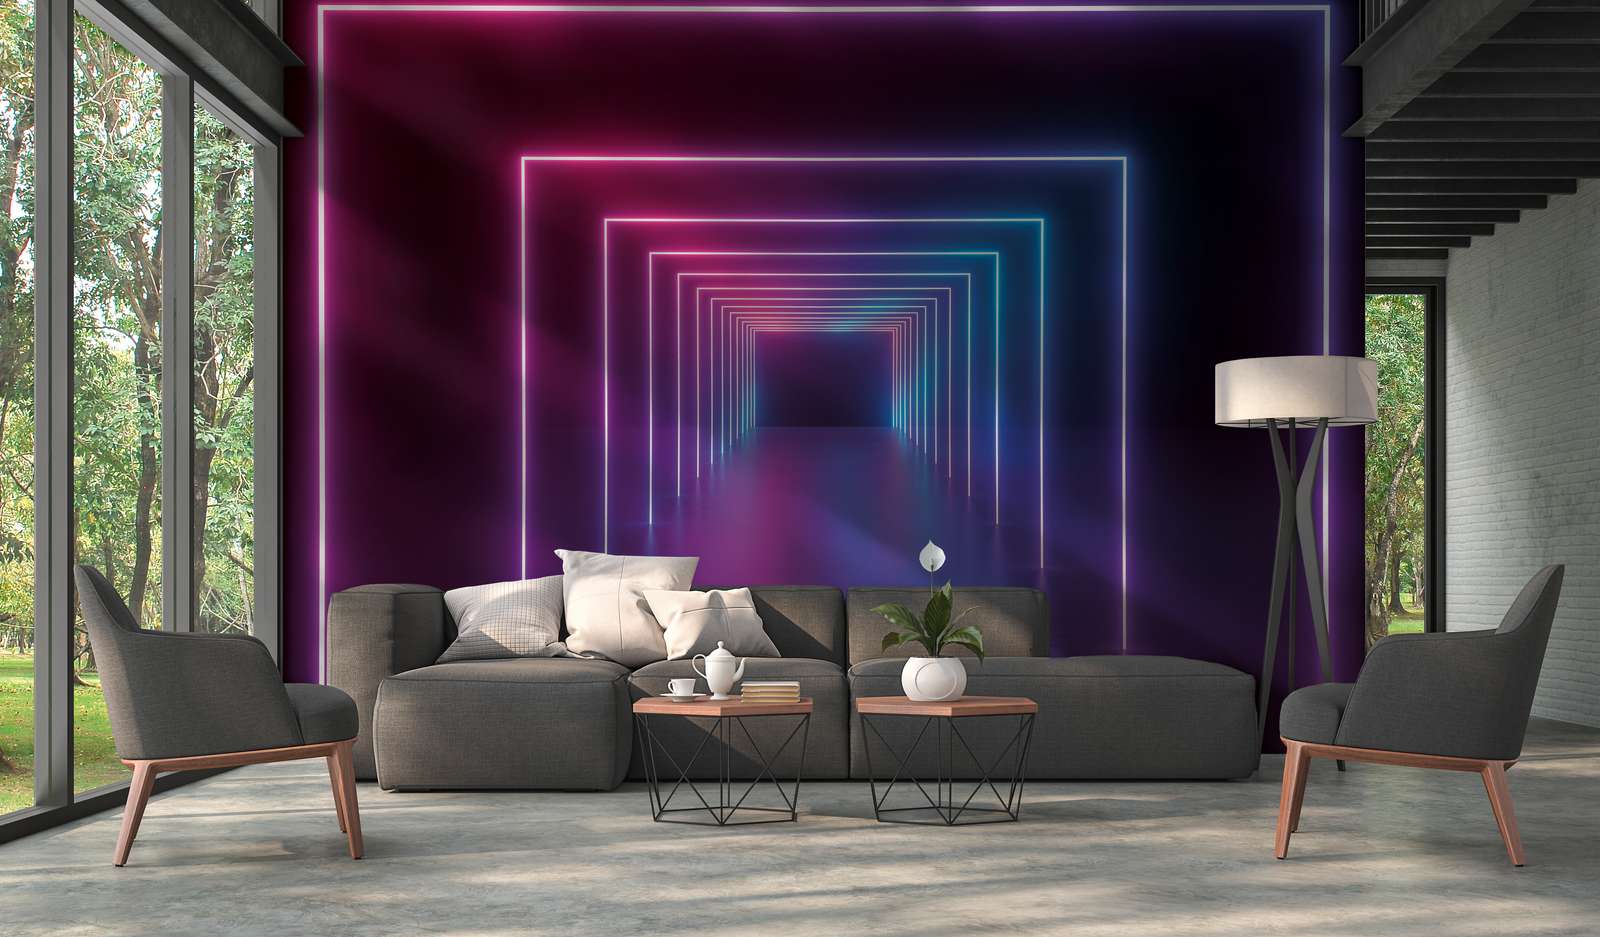             Mural de pared Habitación con pasillo largo Colores LED - Púrpura, Azul, Neón
        